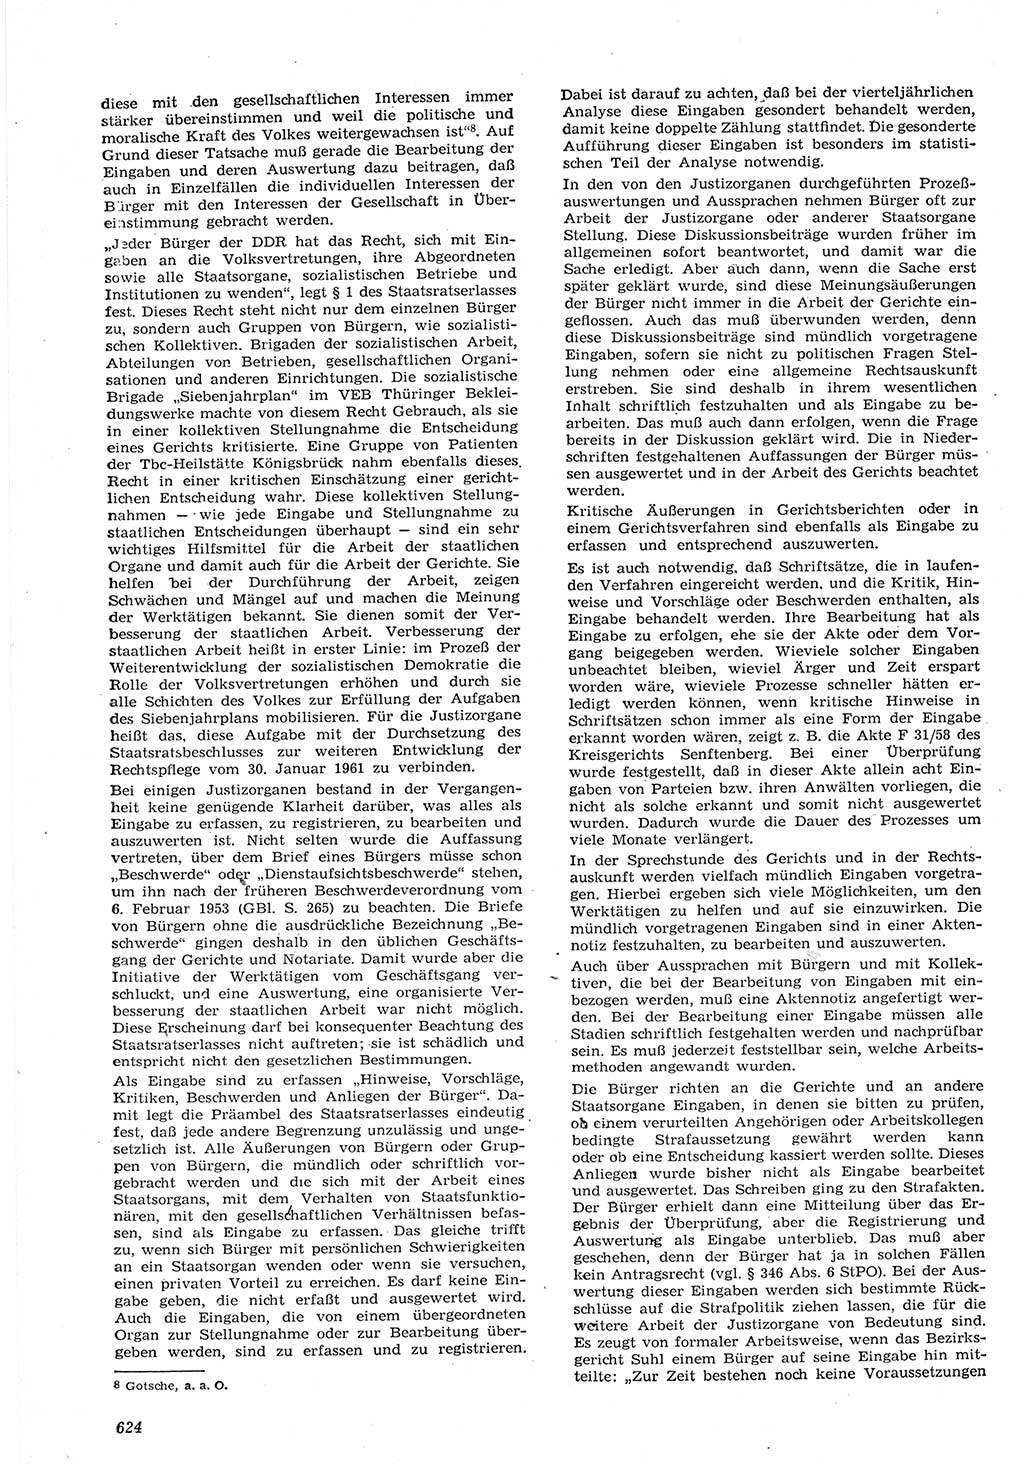 Neue Justiz (NJ), Zeitschrift für Recht und Rechtswissenschaft [Deutsche Demokratische Republik (DDR)], 15. Jahrgang 1961, Seite 624 (NJ DDR 1961, S. 624)